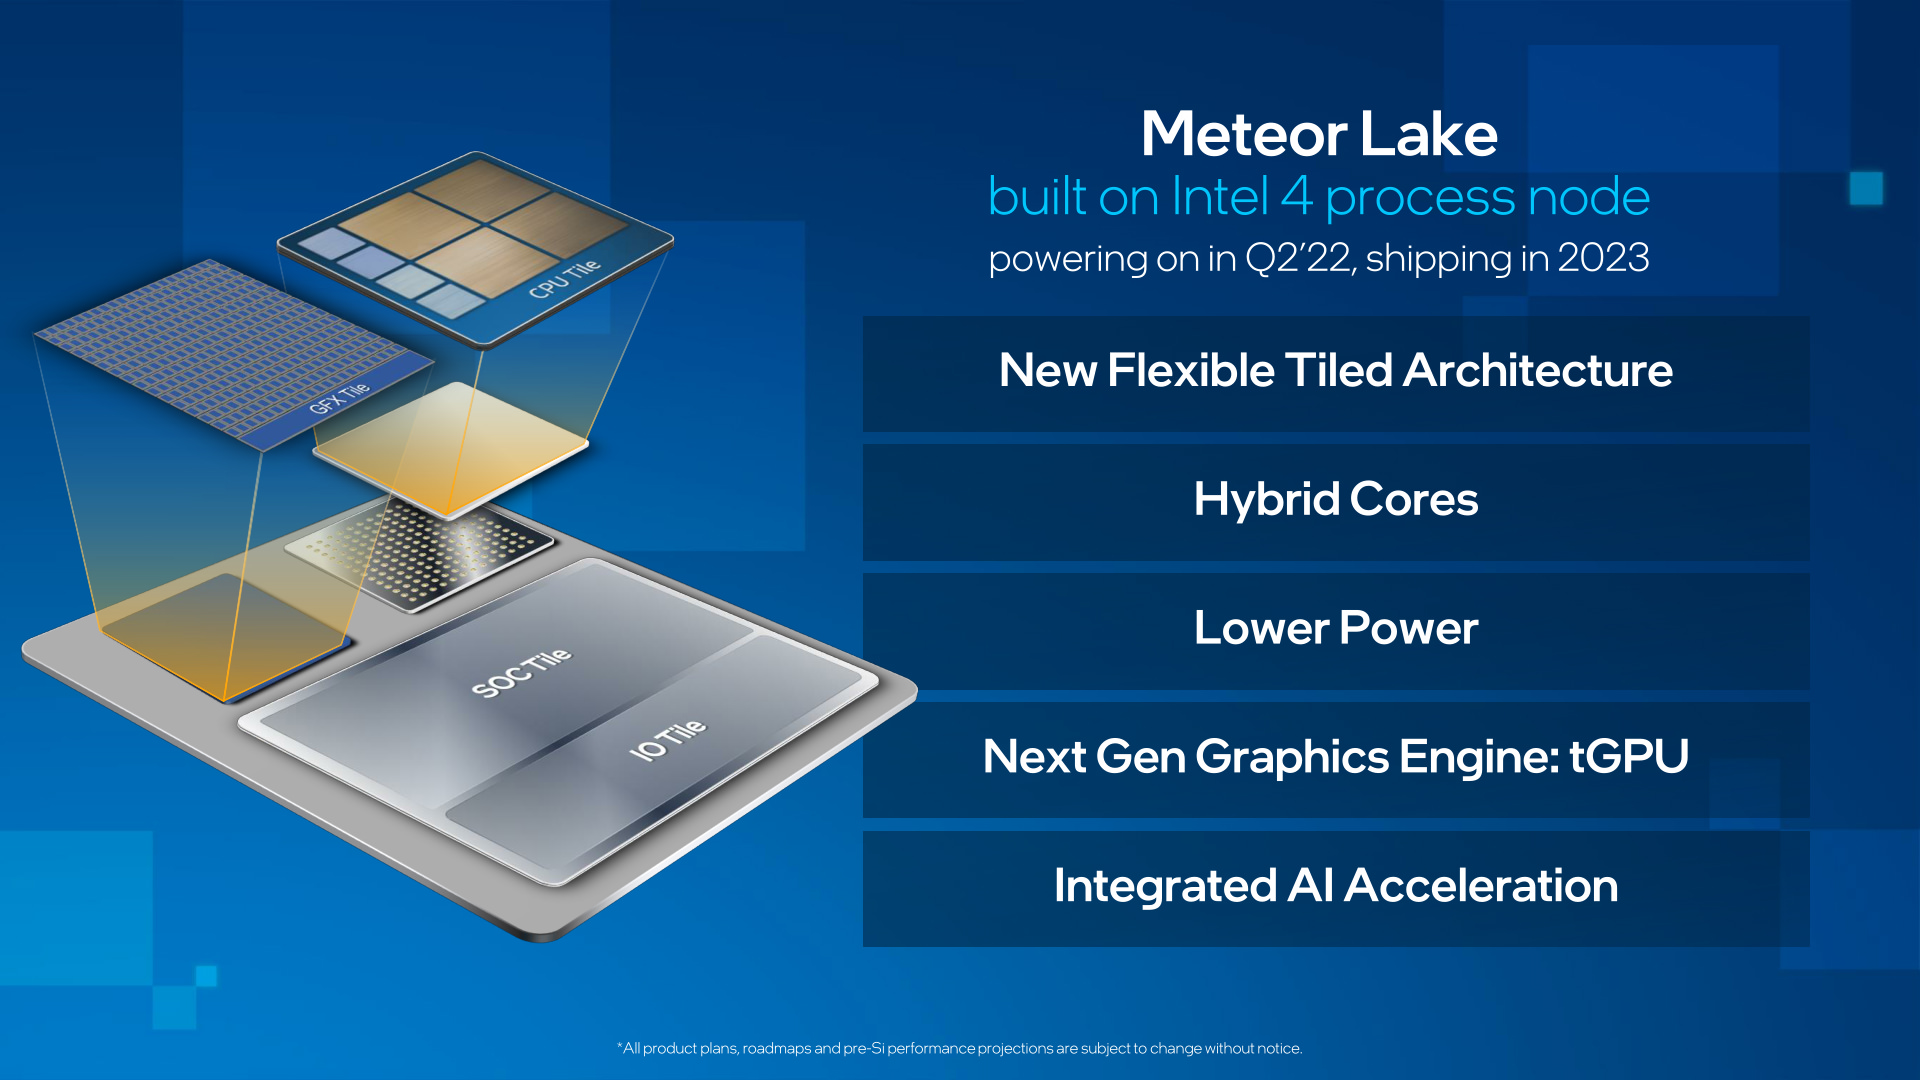 جزئیات پردازنده های نسل چهاردهمی میتیور لیک اینتل Intel Meteor Lake در اسلاید رسمی